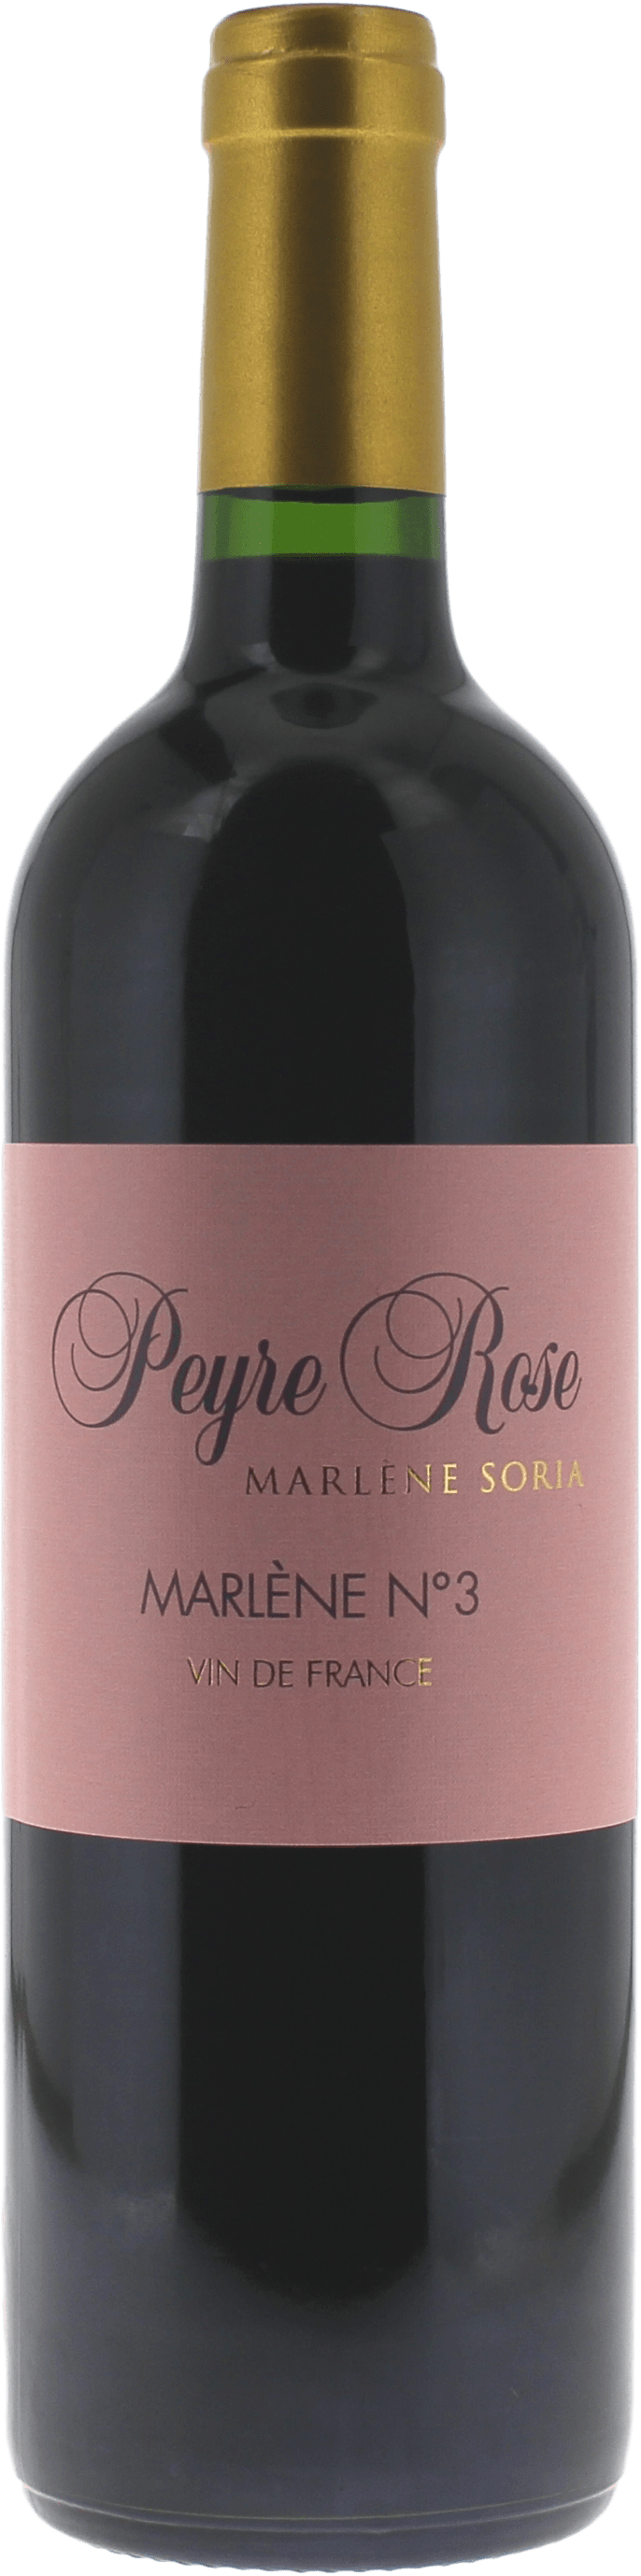 Peyre rose marlene n3 2010  Vin de France, Languedoc